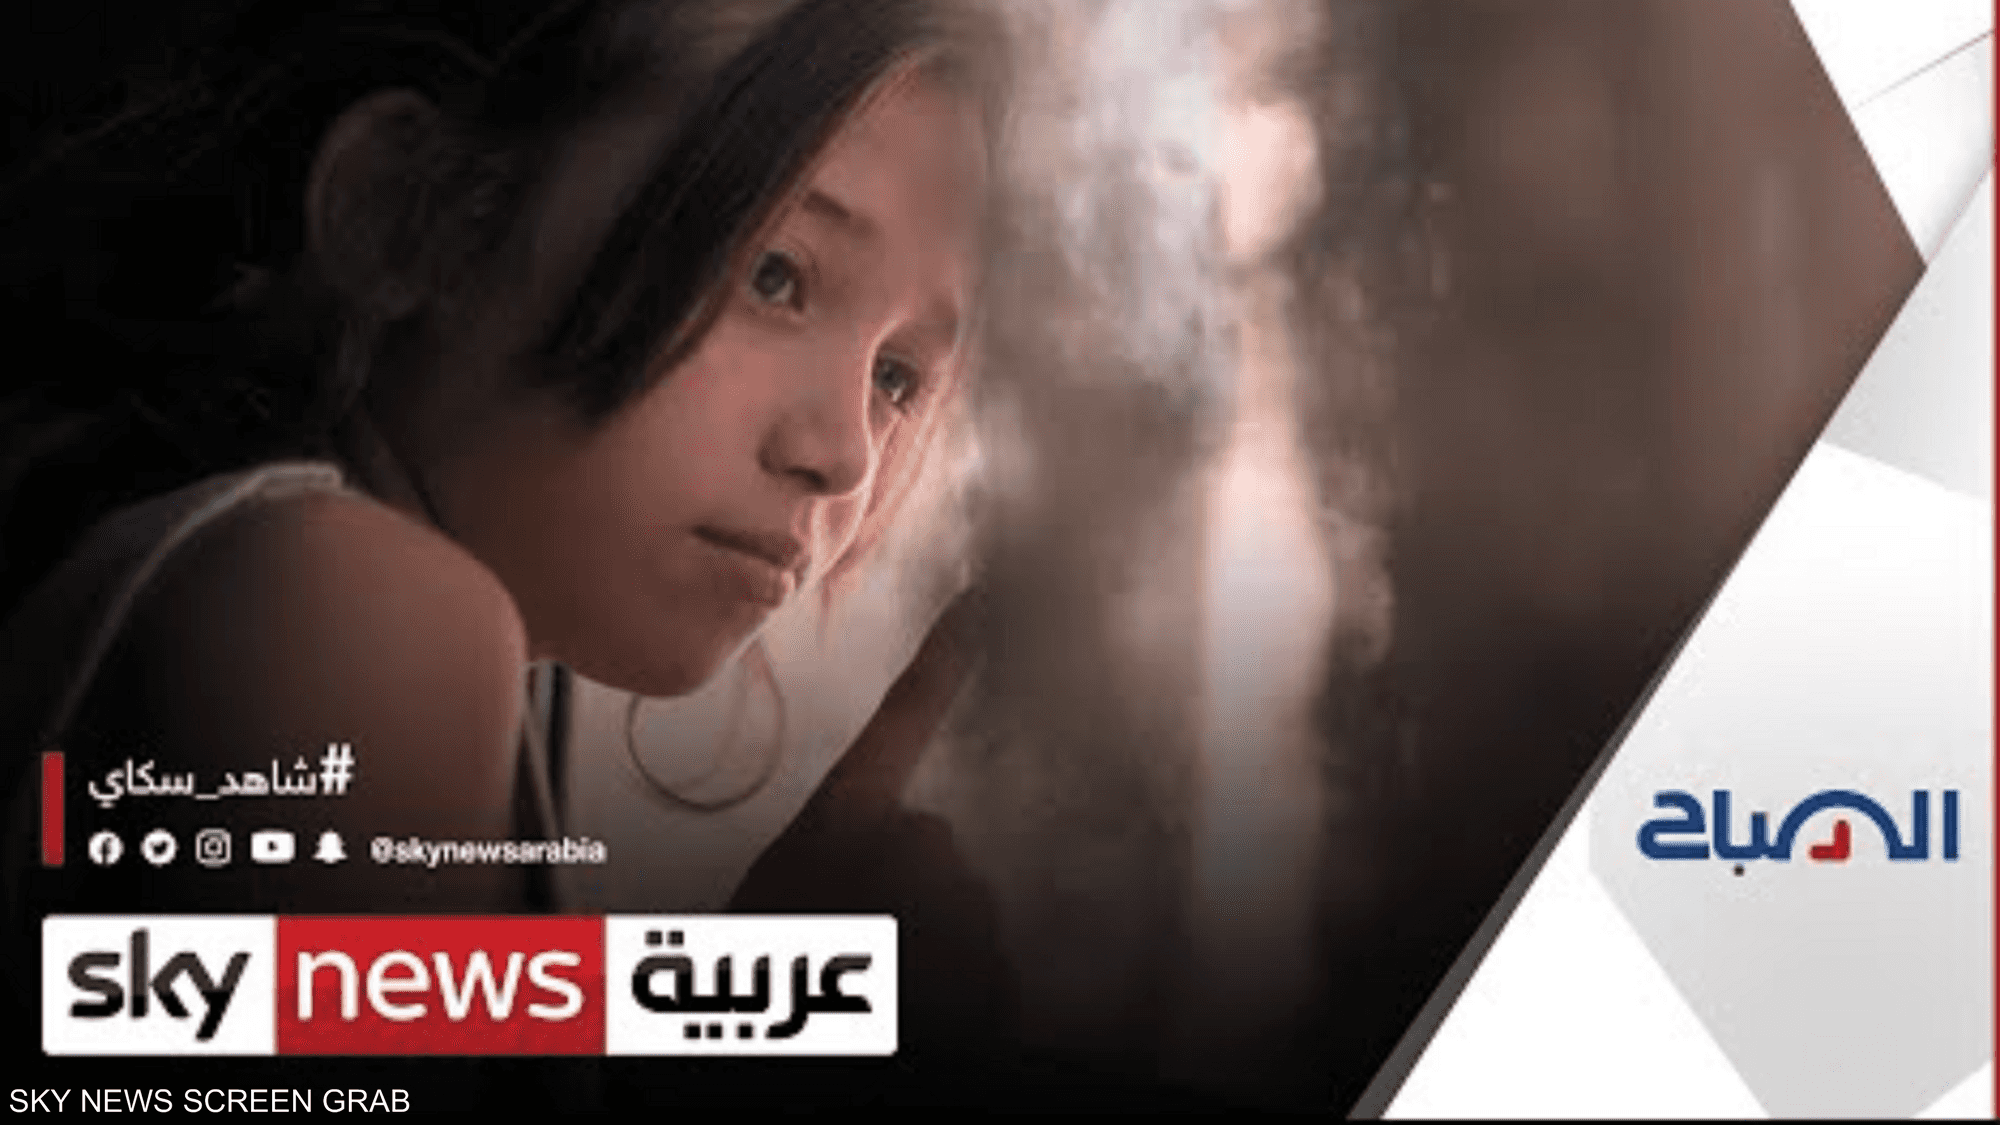 "تالافيزيون" أول فيلم عربي في القائمة القصيرة للأوسكار